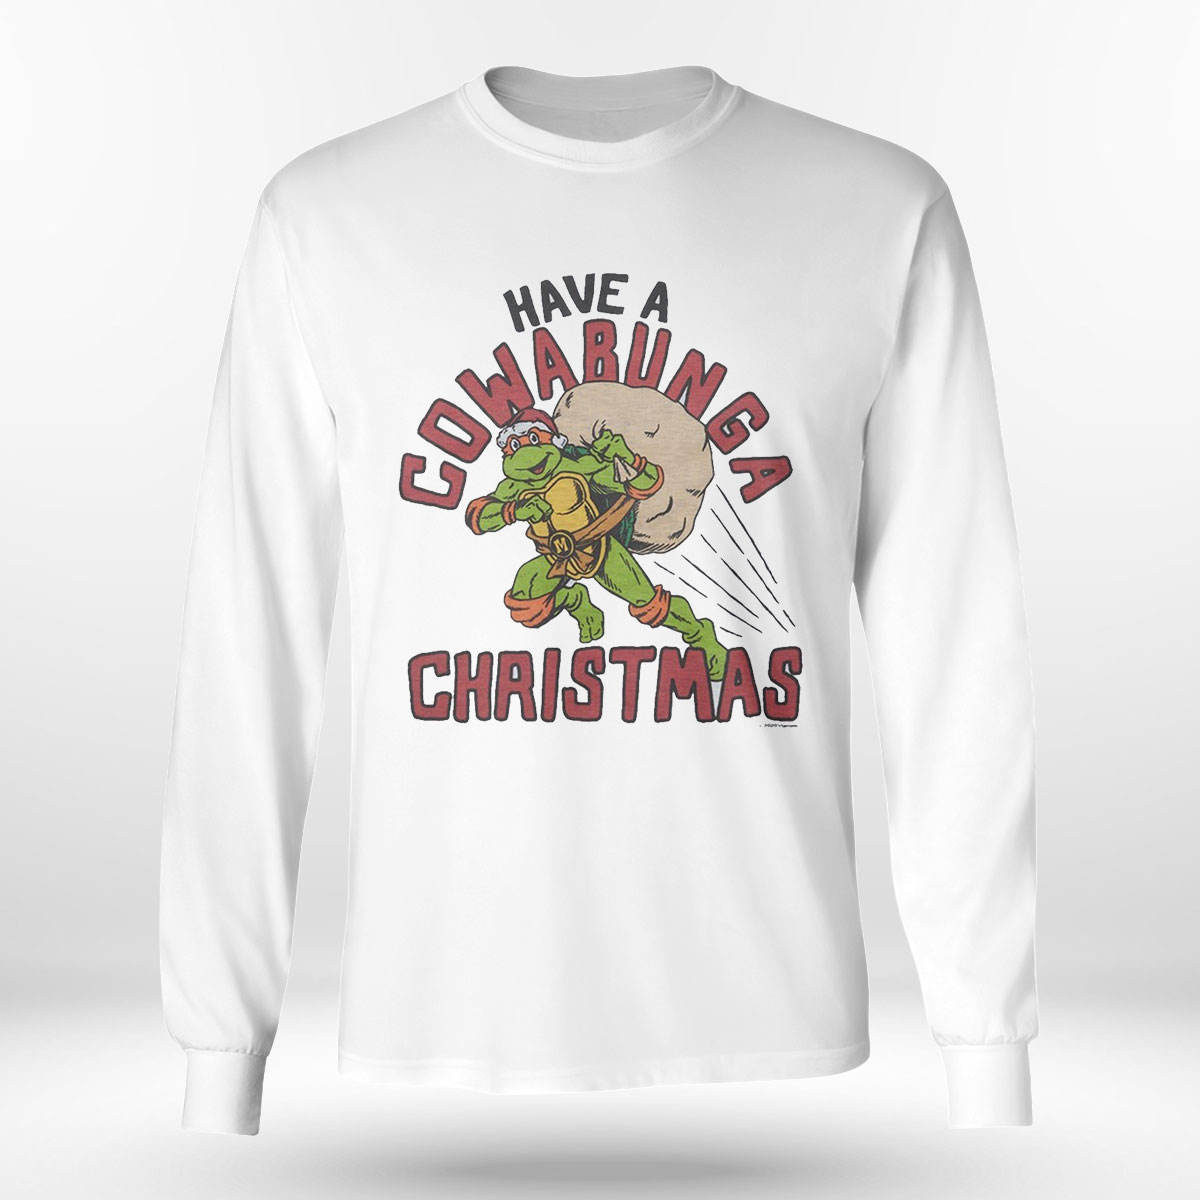 Tmnt Have A Cowabunga Christmas Shirt